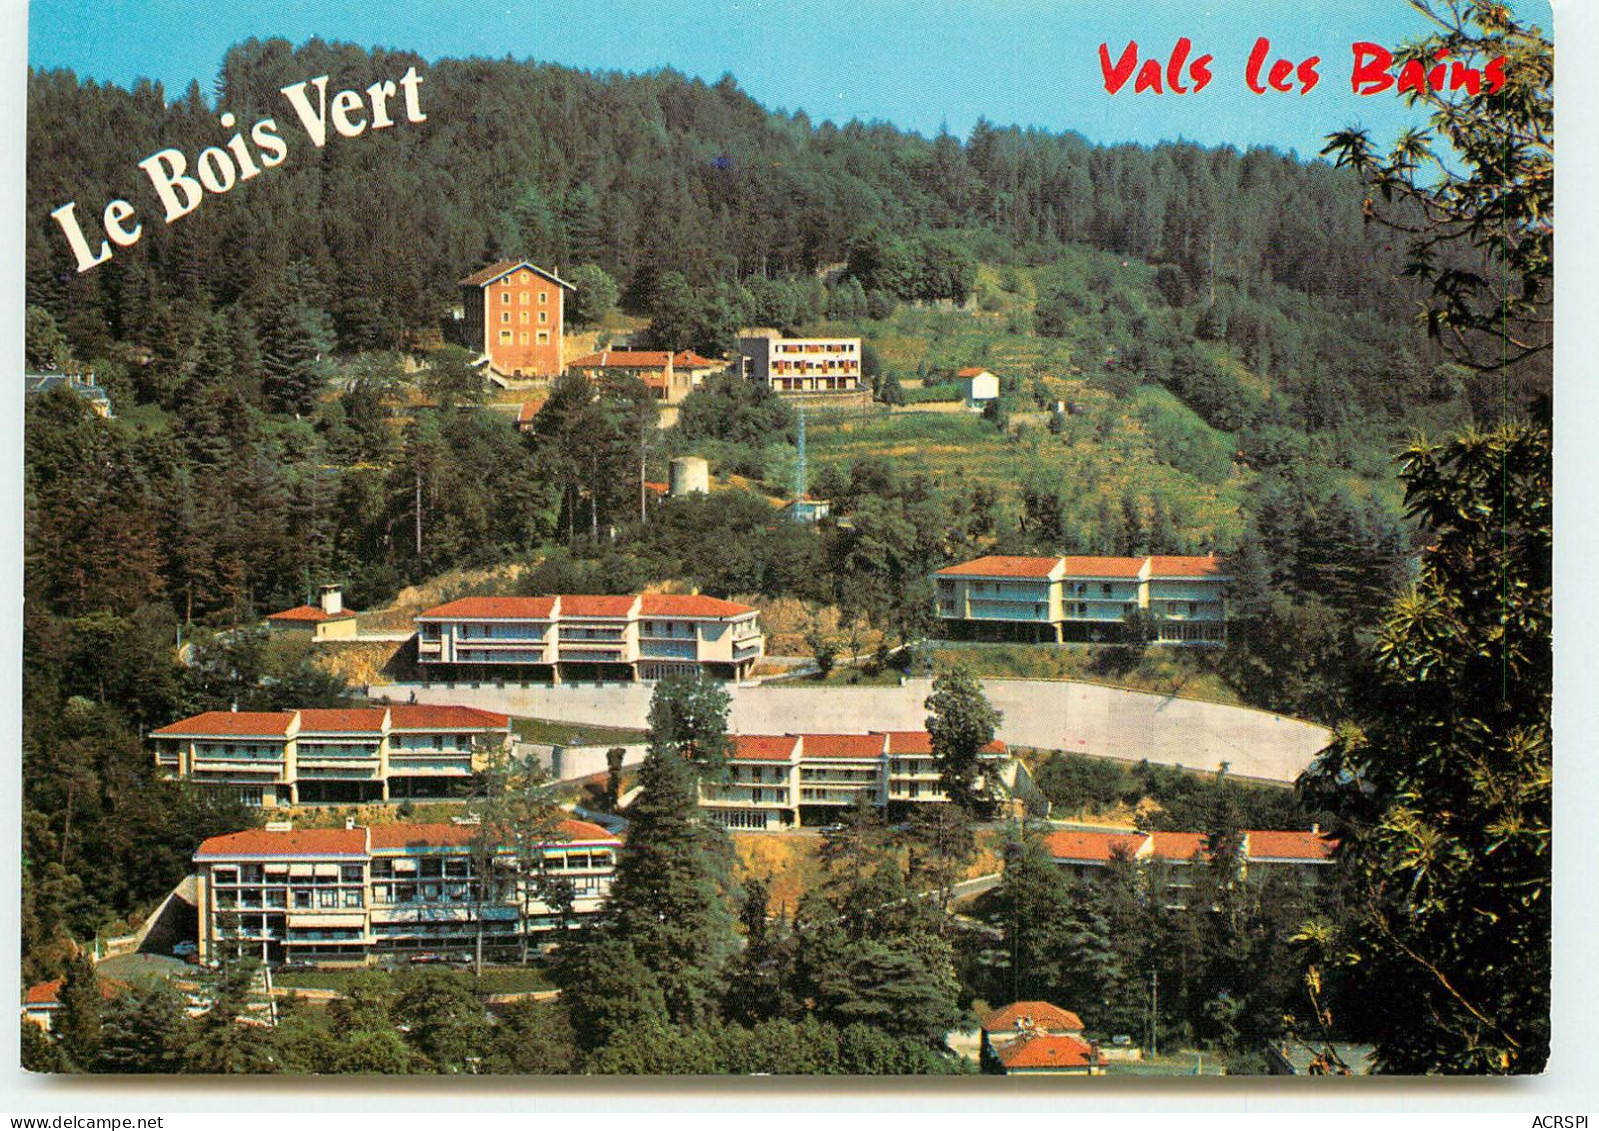 VALS LES BAINS  Le Bois Vert   SS 1333 - Vals Les Bains